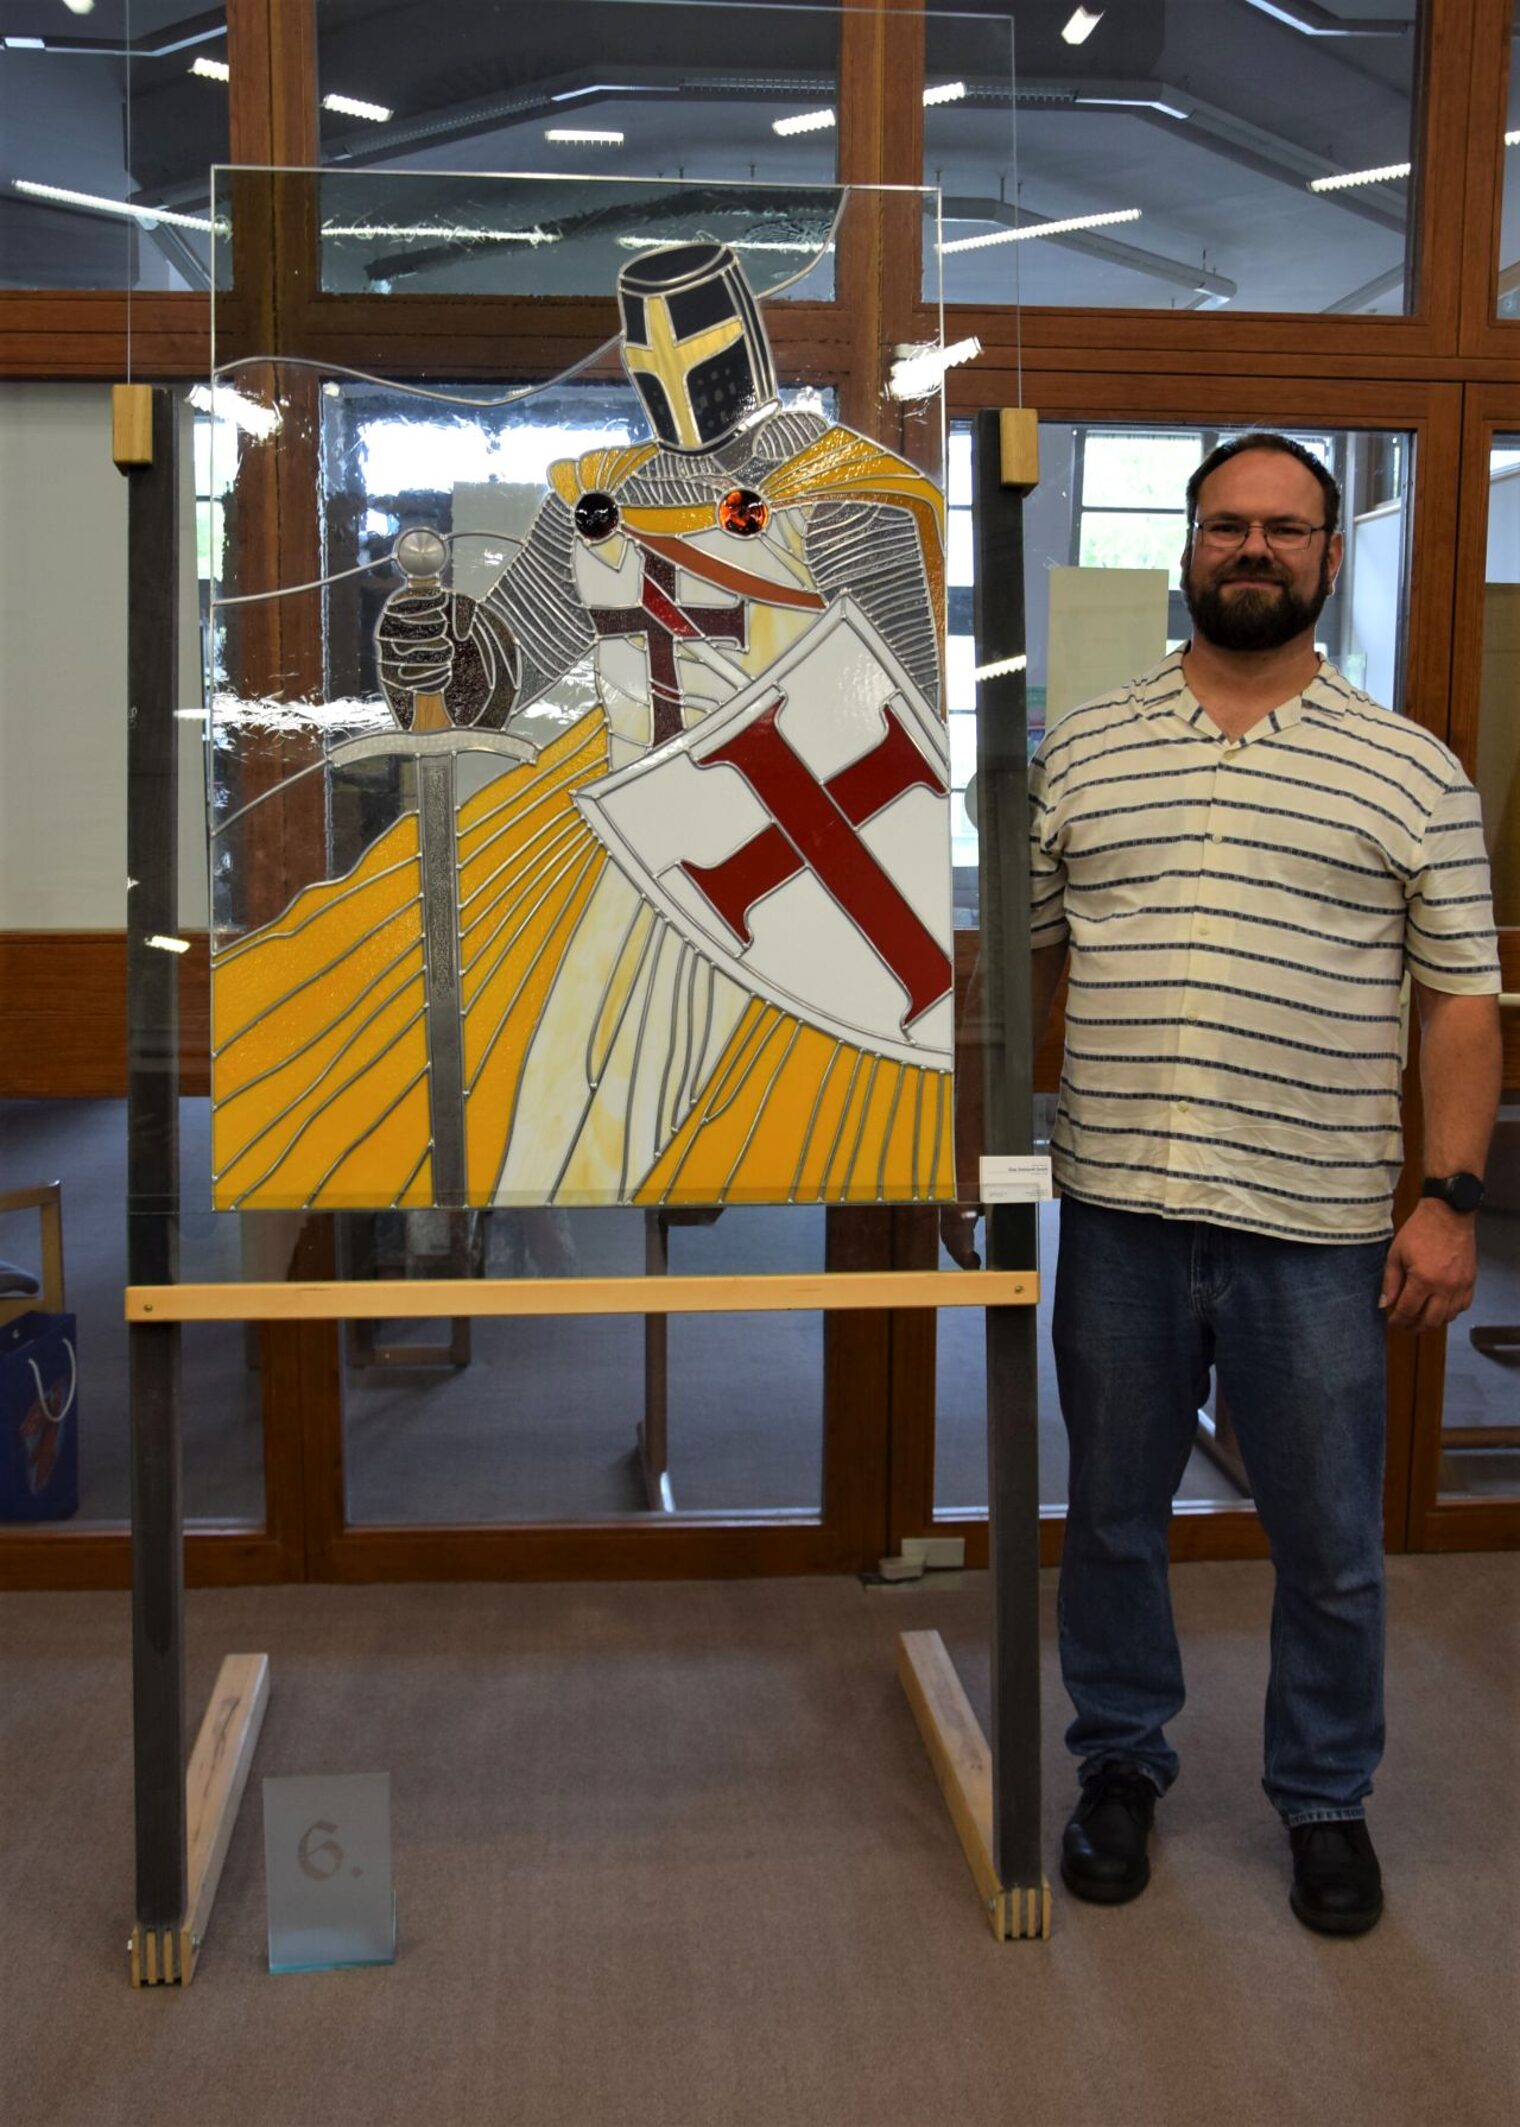 Die Klinge eines Deko-Schwertes seiner Oma, Leder und Holz passte Michael Spahrkäs in seine Kunstverglasung "mittelalterlicher Kreuzritter" ein.